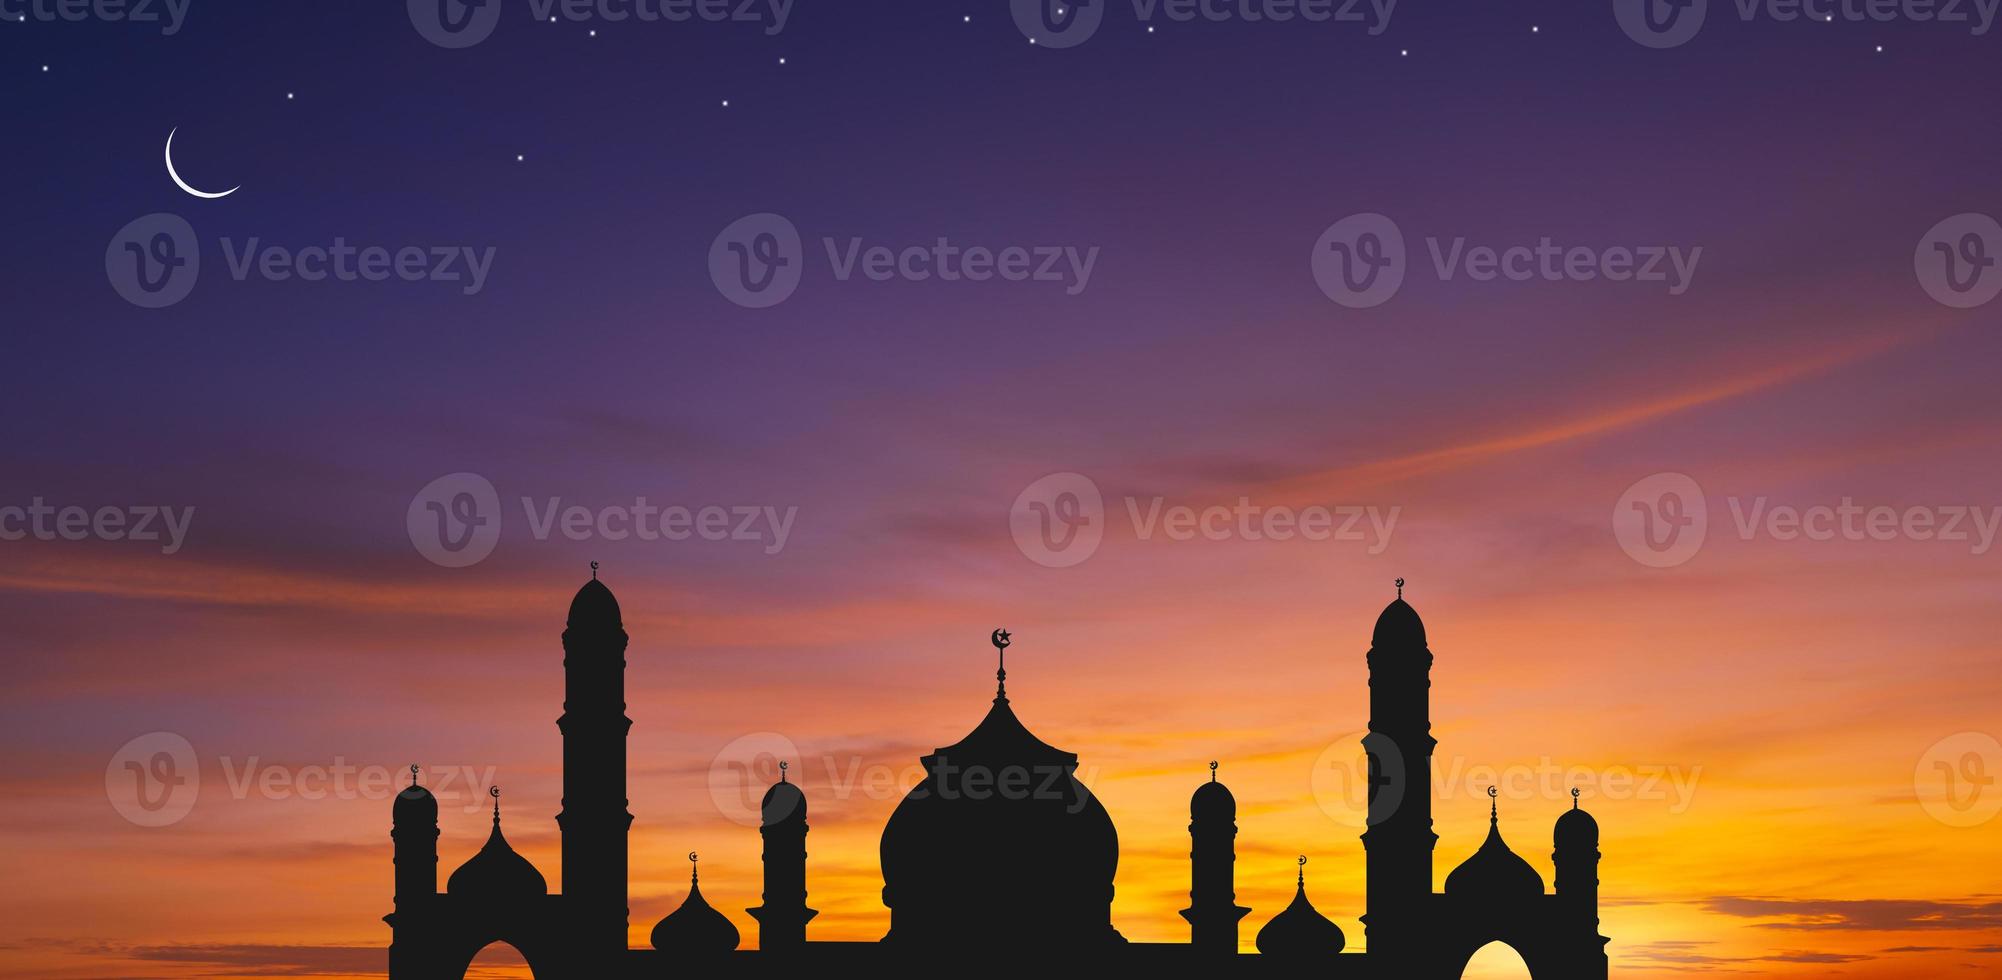 Panoramablick auf die Kuppel der Silhouette der Moschee gegen den farbenfrohen Abendhimmel und den Halbmond mit Sternen in der Abenddämmerung, Hintergrunddesign für die Iftar-Zeit während des heiligen Monats Ramadan foto